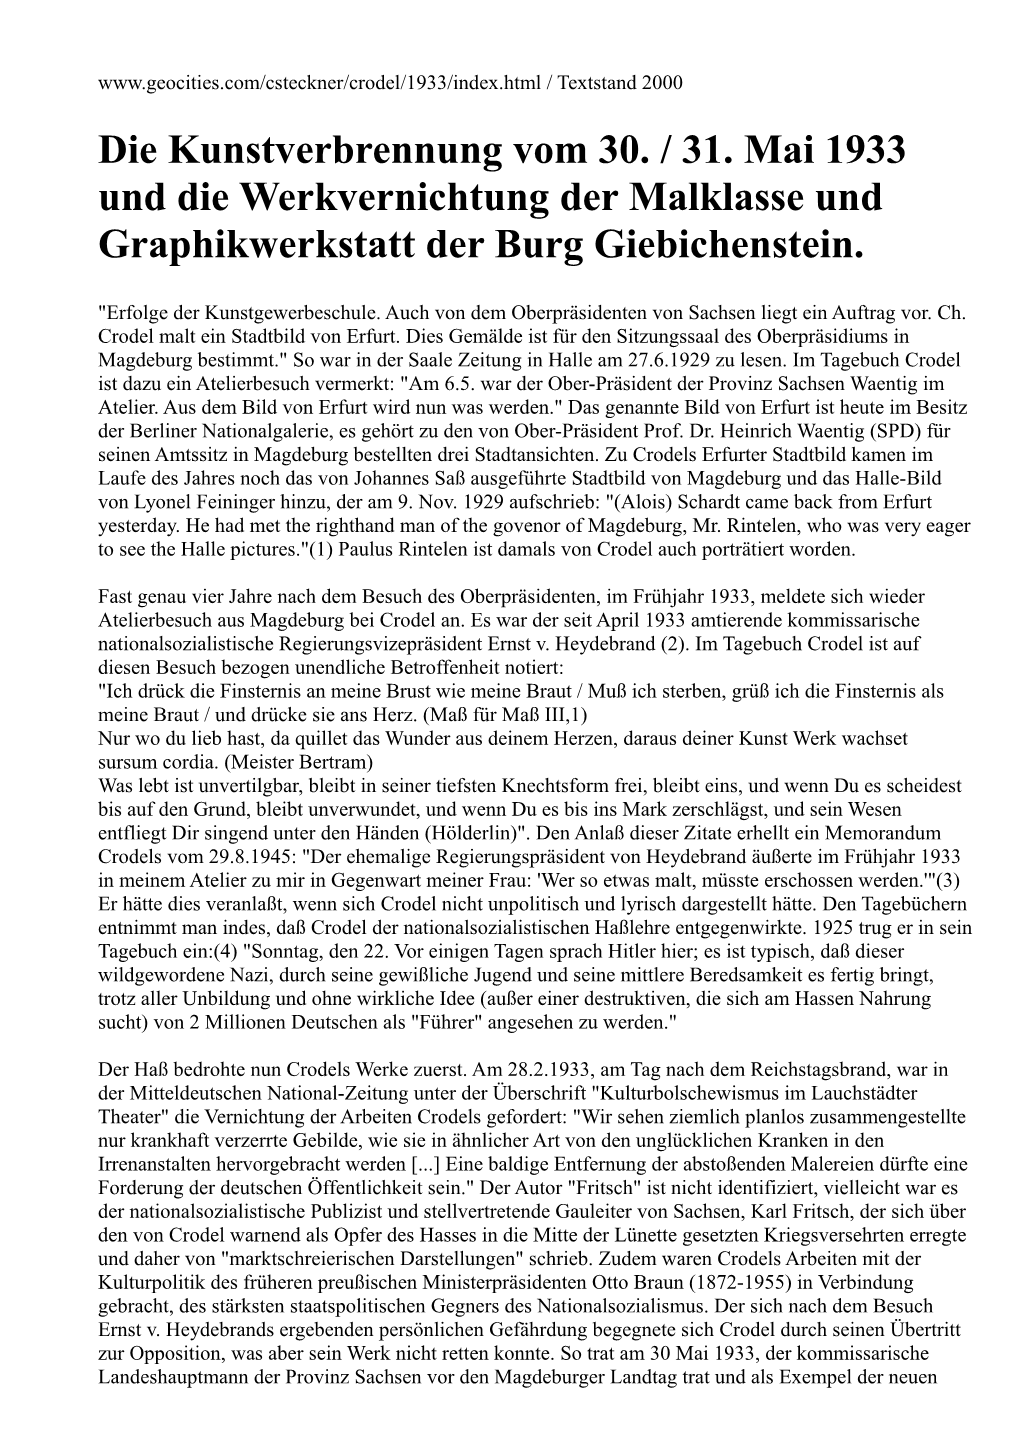 Die Kunstverbrennung Vom 30. / 31. Mai 1933 Und Die Werkvernichtung Der Malklasse Und Graphikwerkstatt Der Burg Giebichenstein